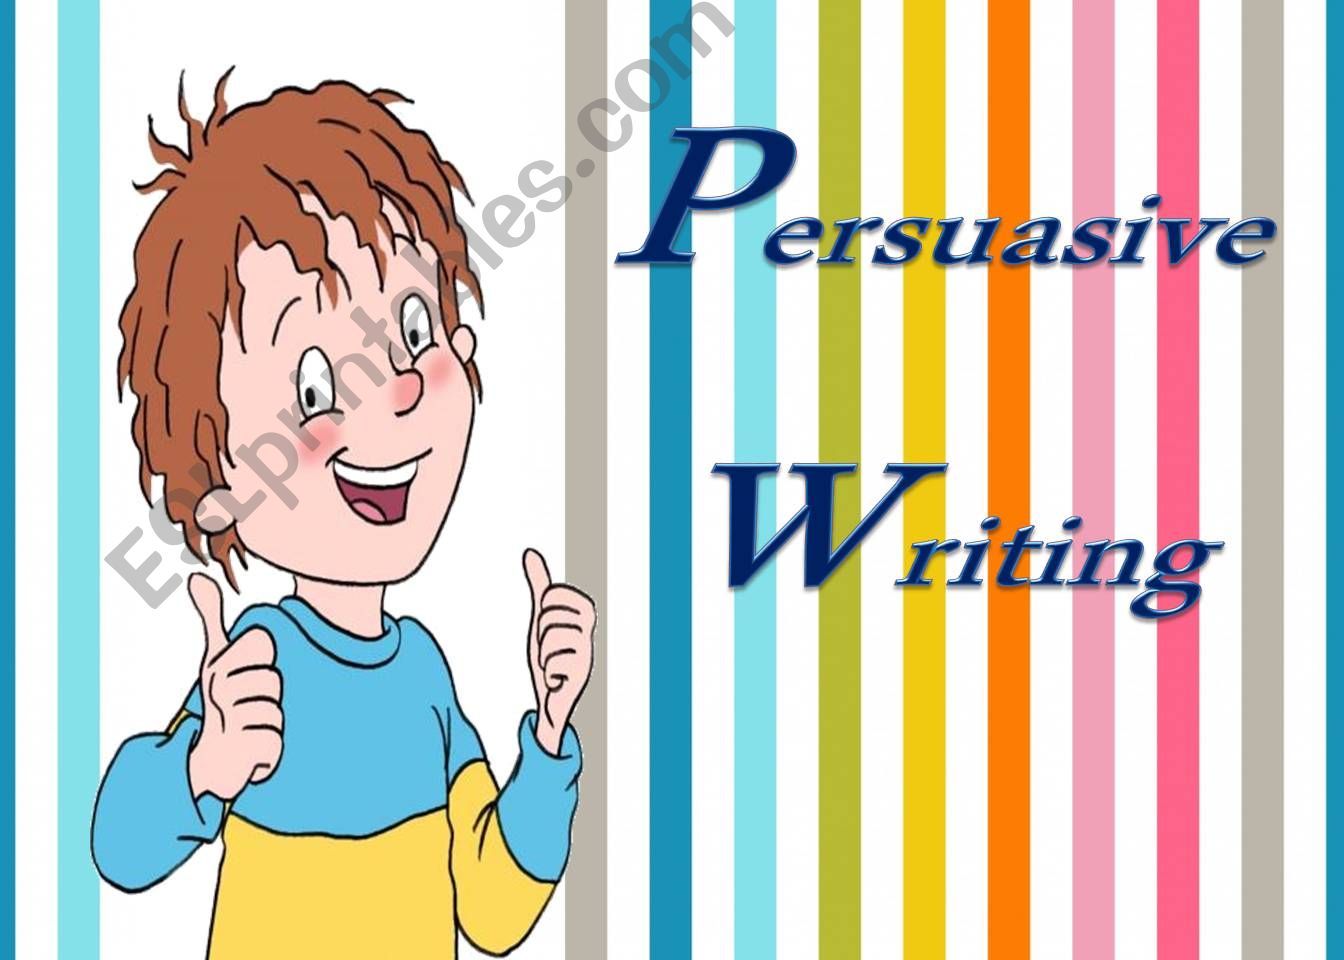 Persuasive Writing powerpoint